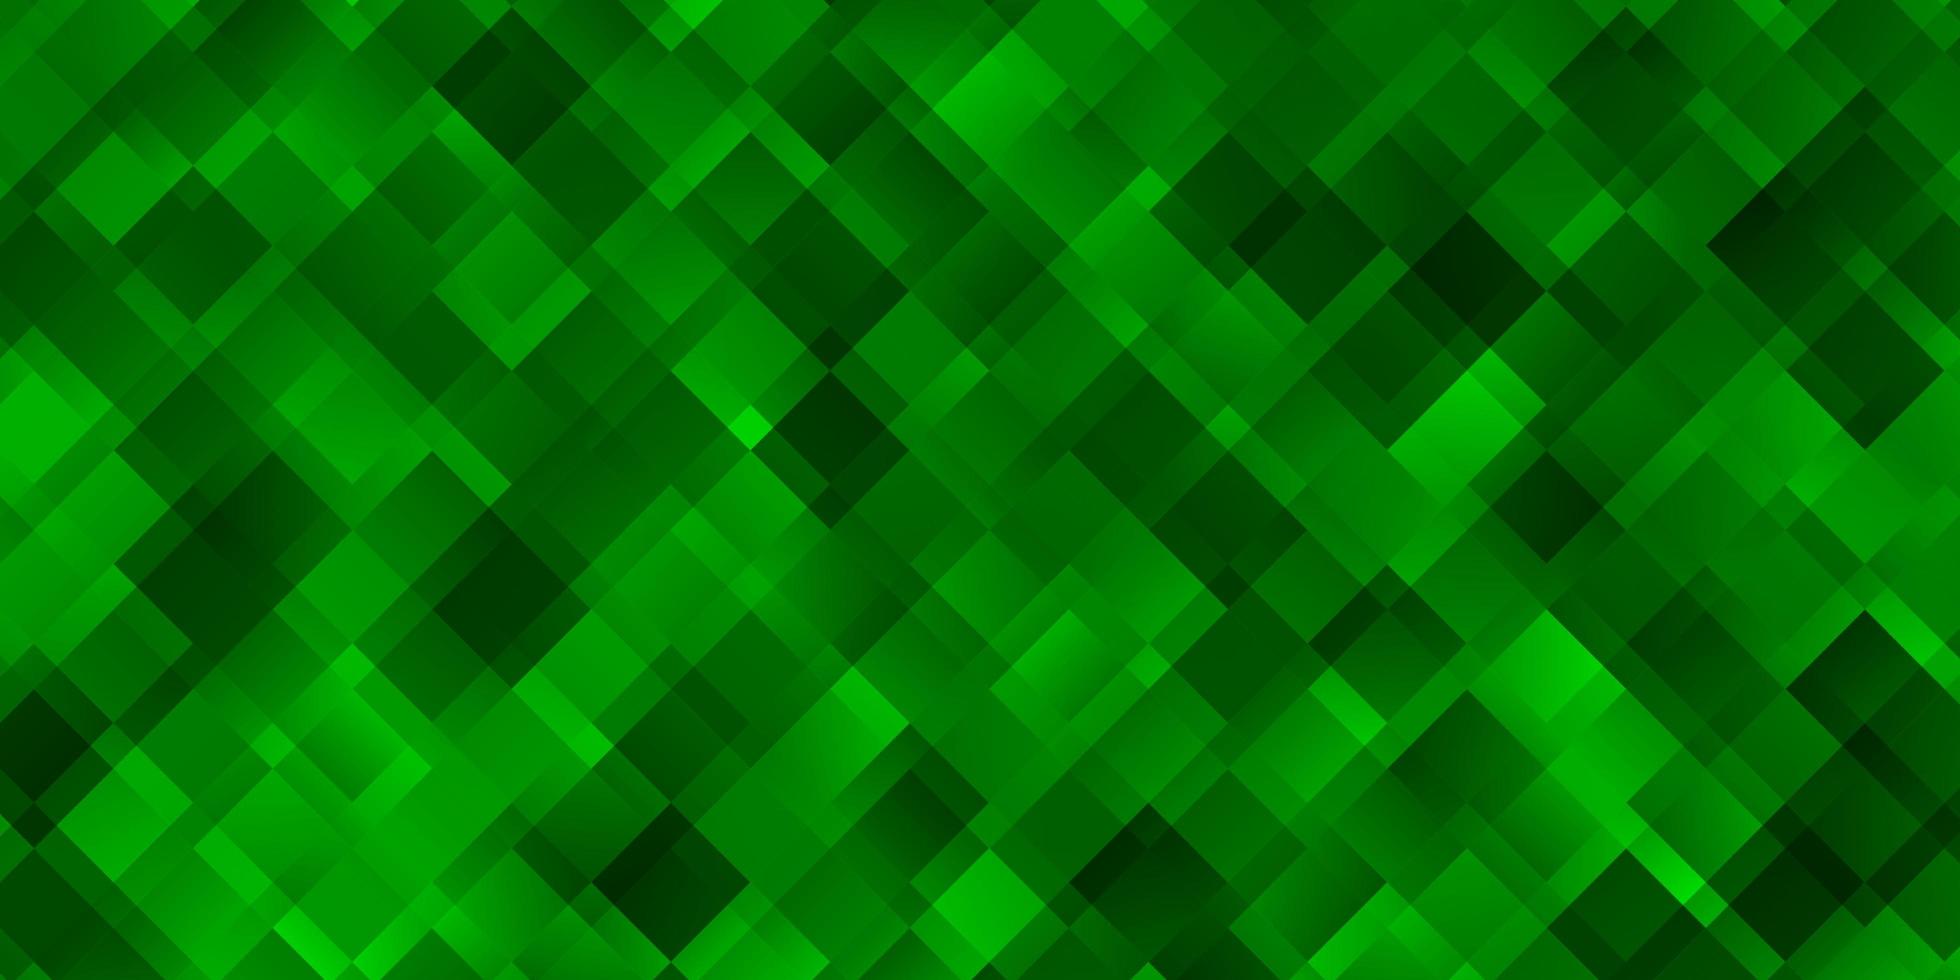 sfondo vettoriale verde chiaro in stile poligonale